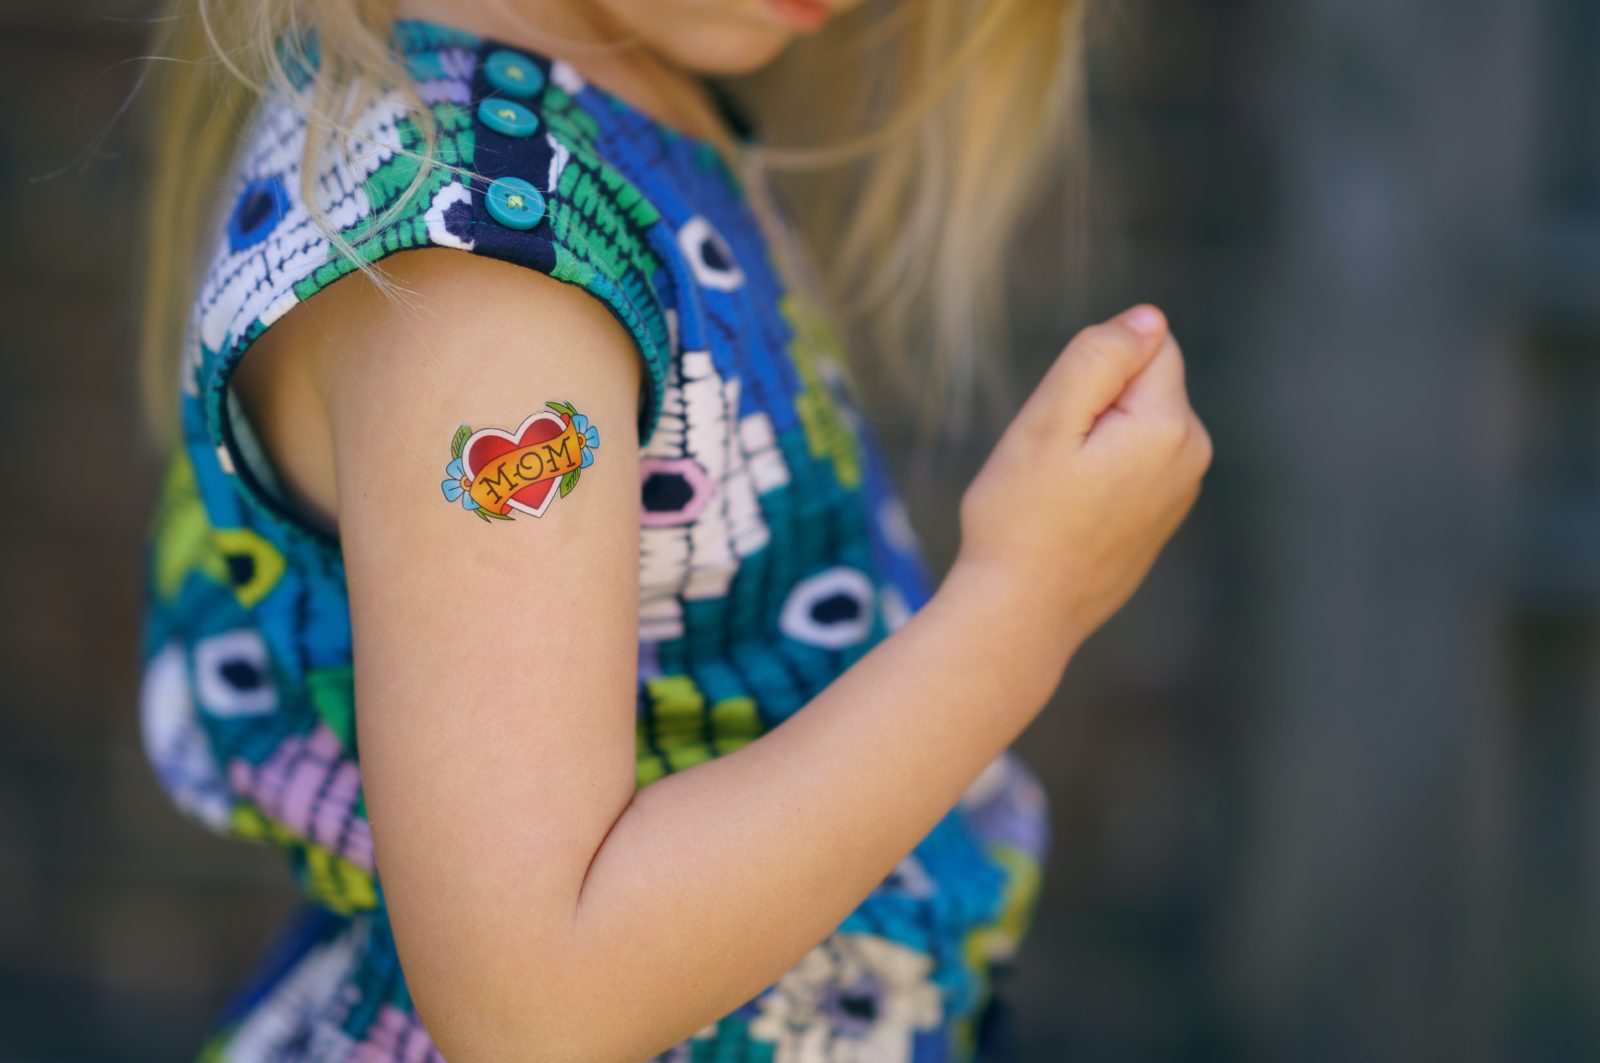 Une enfant qui porte un tatouage éphémère sur son bras droit. Celui-ci représente un cœur rouge avec des fleurs et un bandeau où est écrit "Mom".